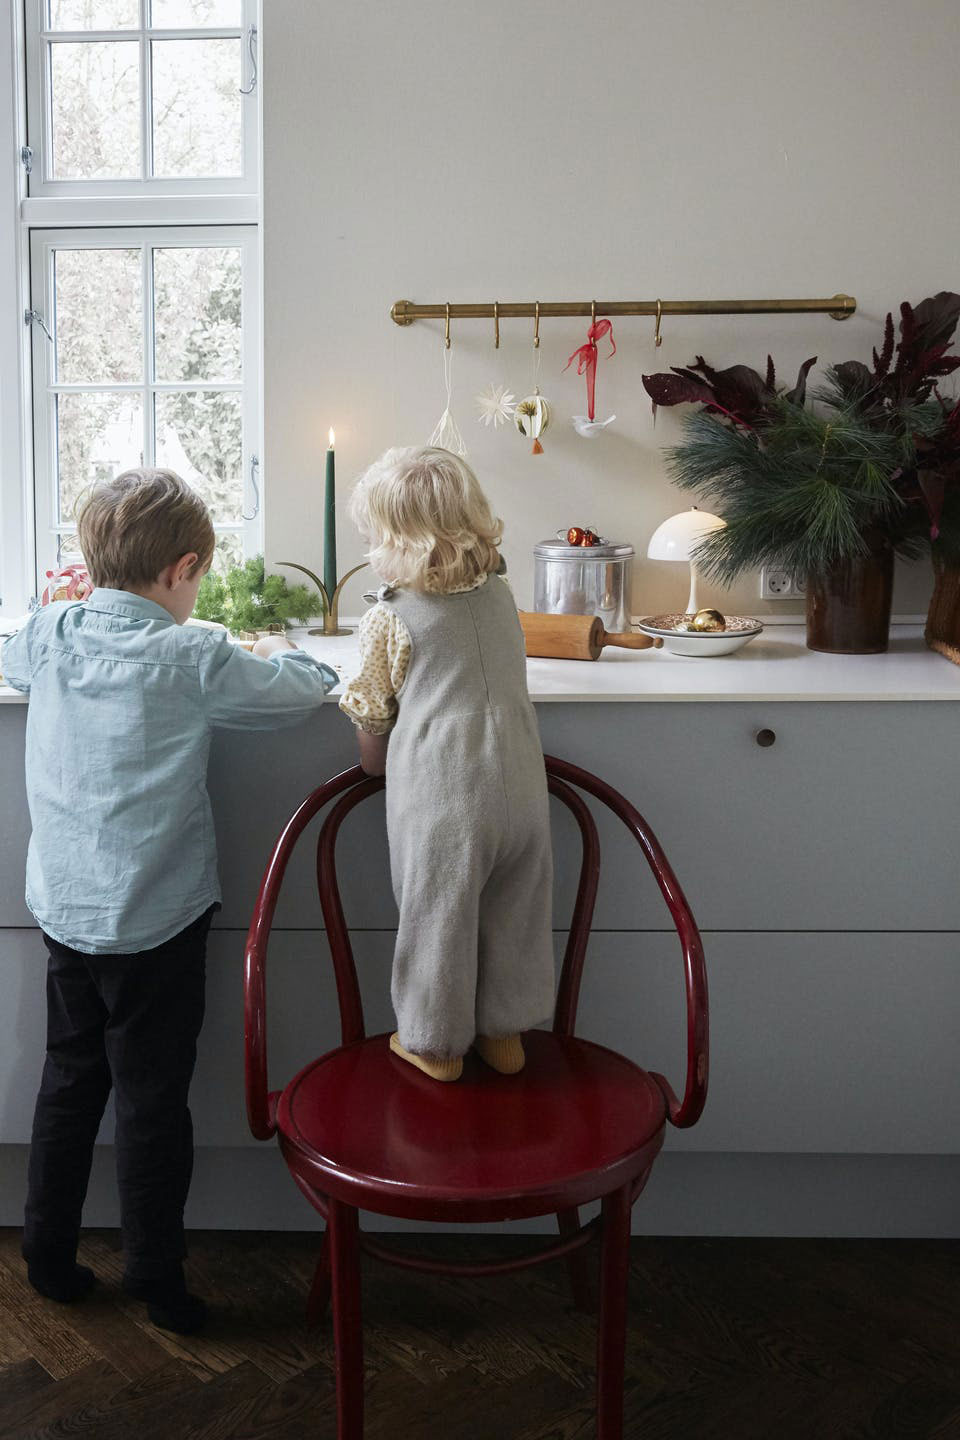 Прекрасная историческая вилла семьи дизайнера в Дании